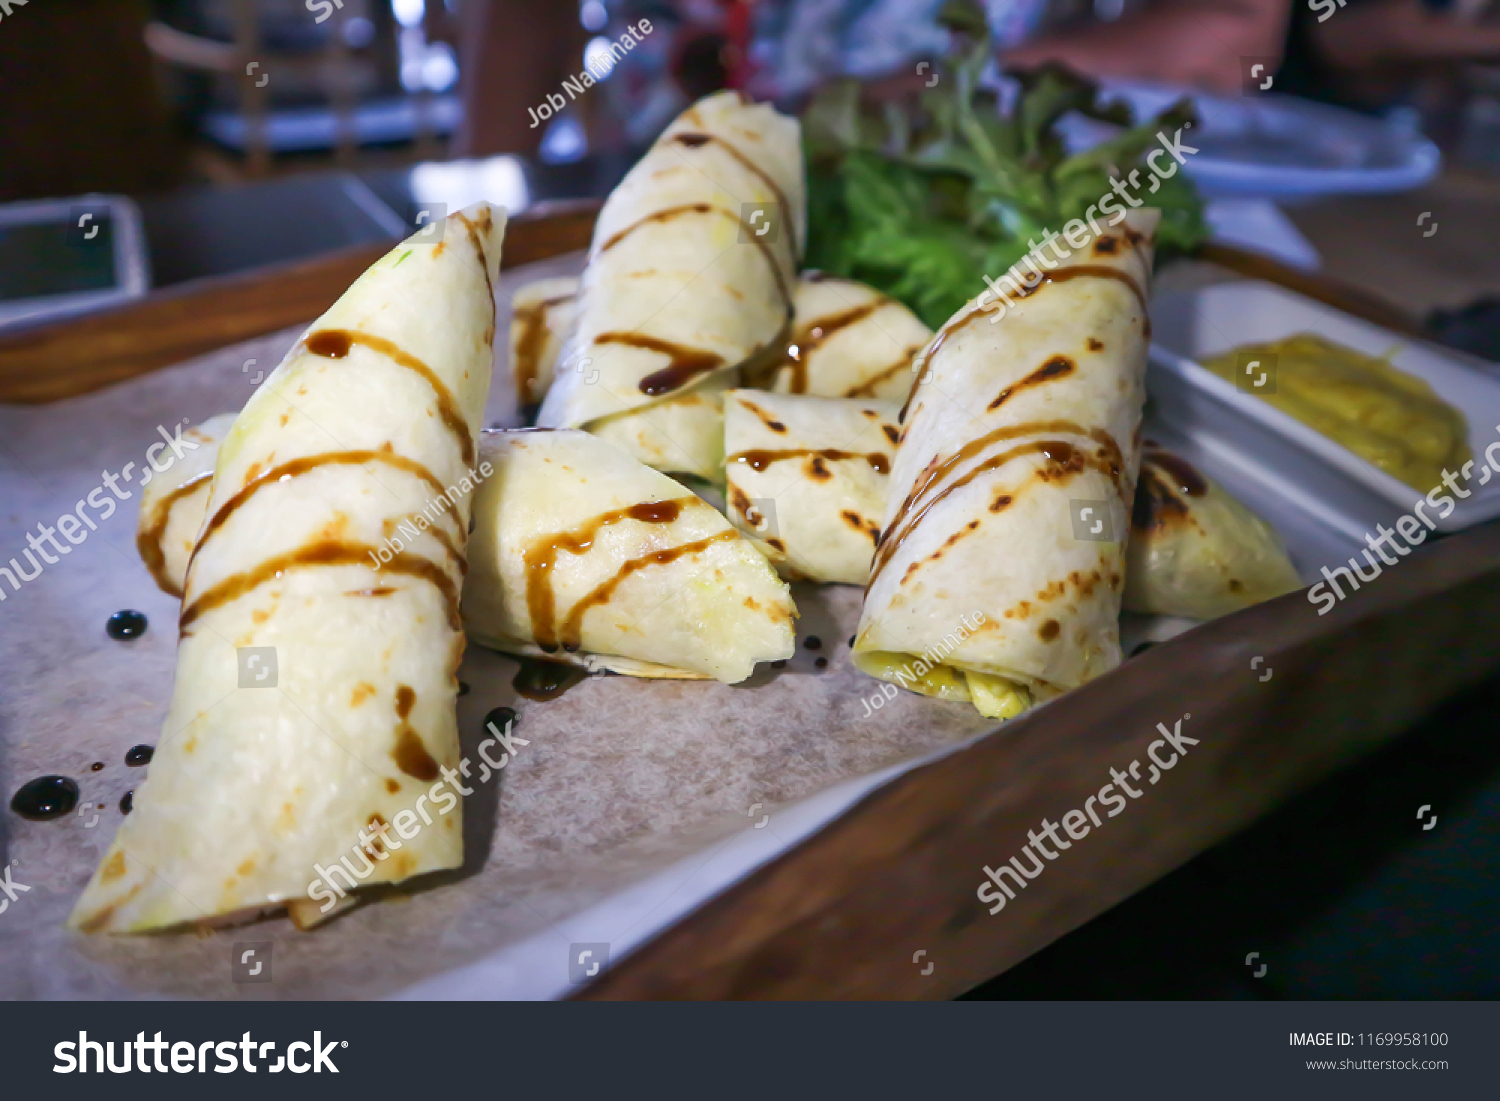 roll or Mexican roll or Mexican wrap, Mexican food #1169958100